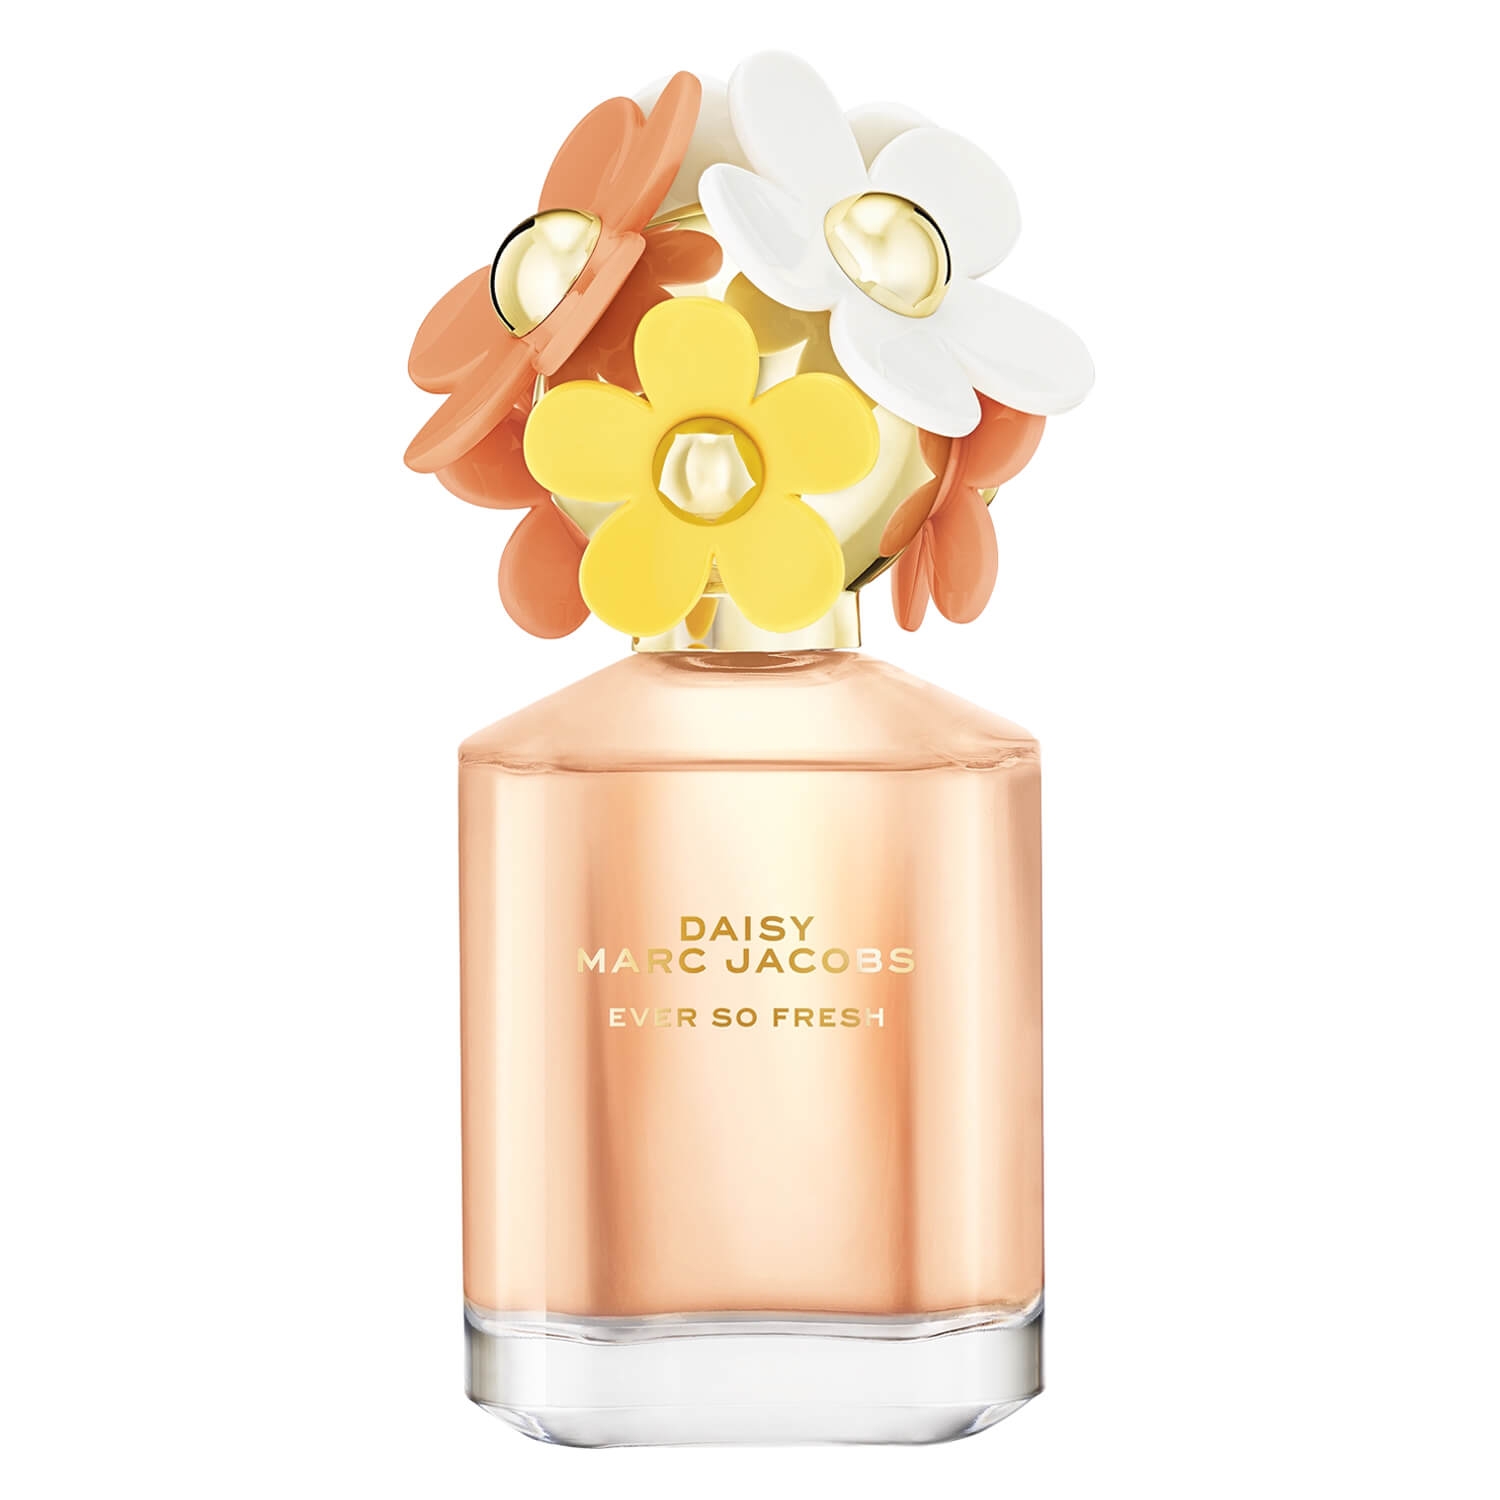 Produktbild von Marc Jacobs - Daisy Ever So Fresh Eau de Parfum